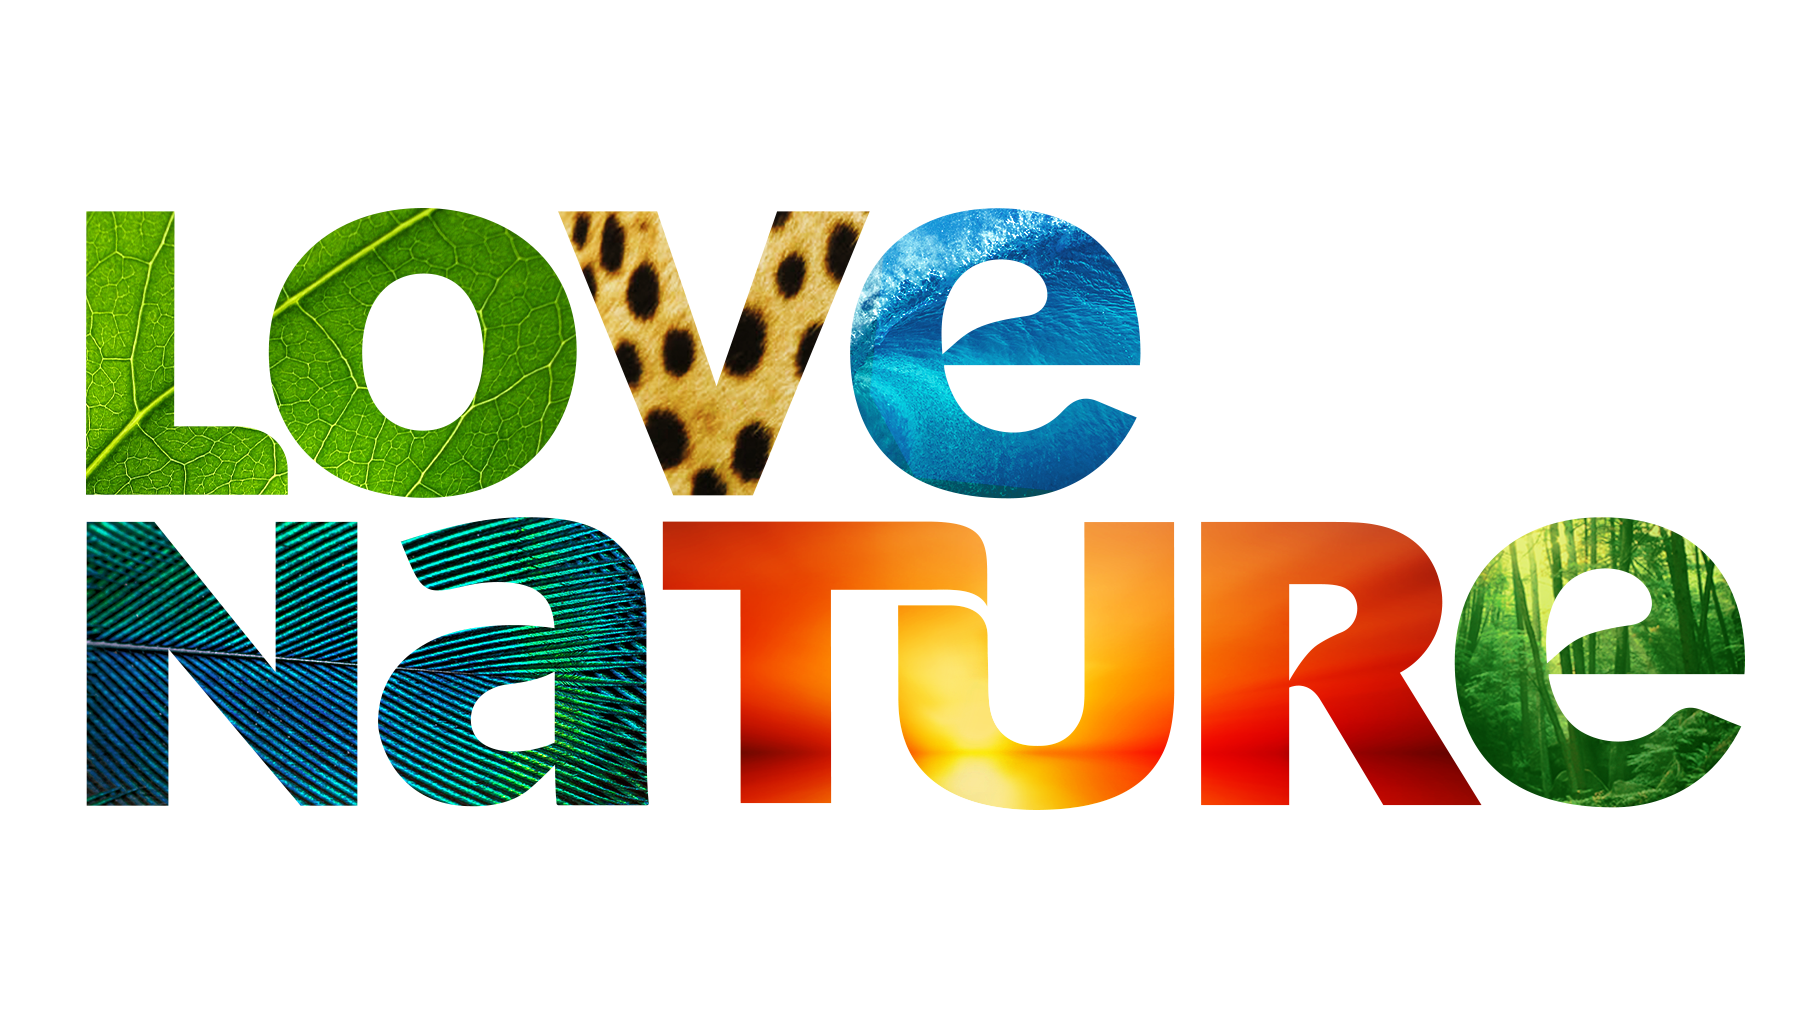 På kanten elite Landmand Videos - Love Nature